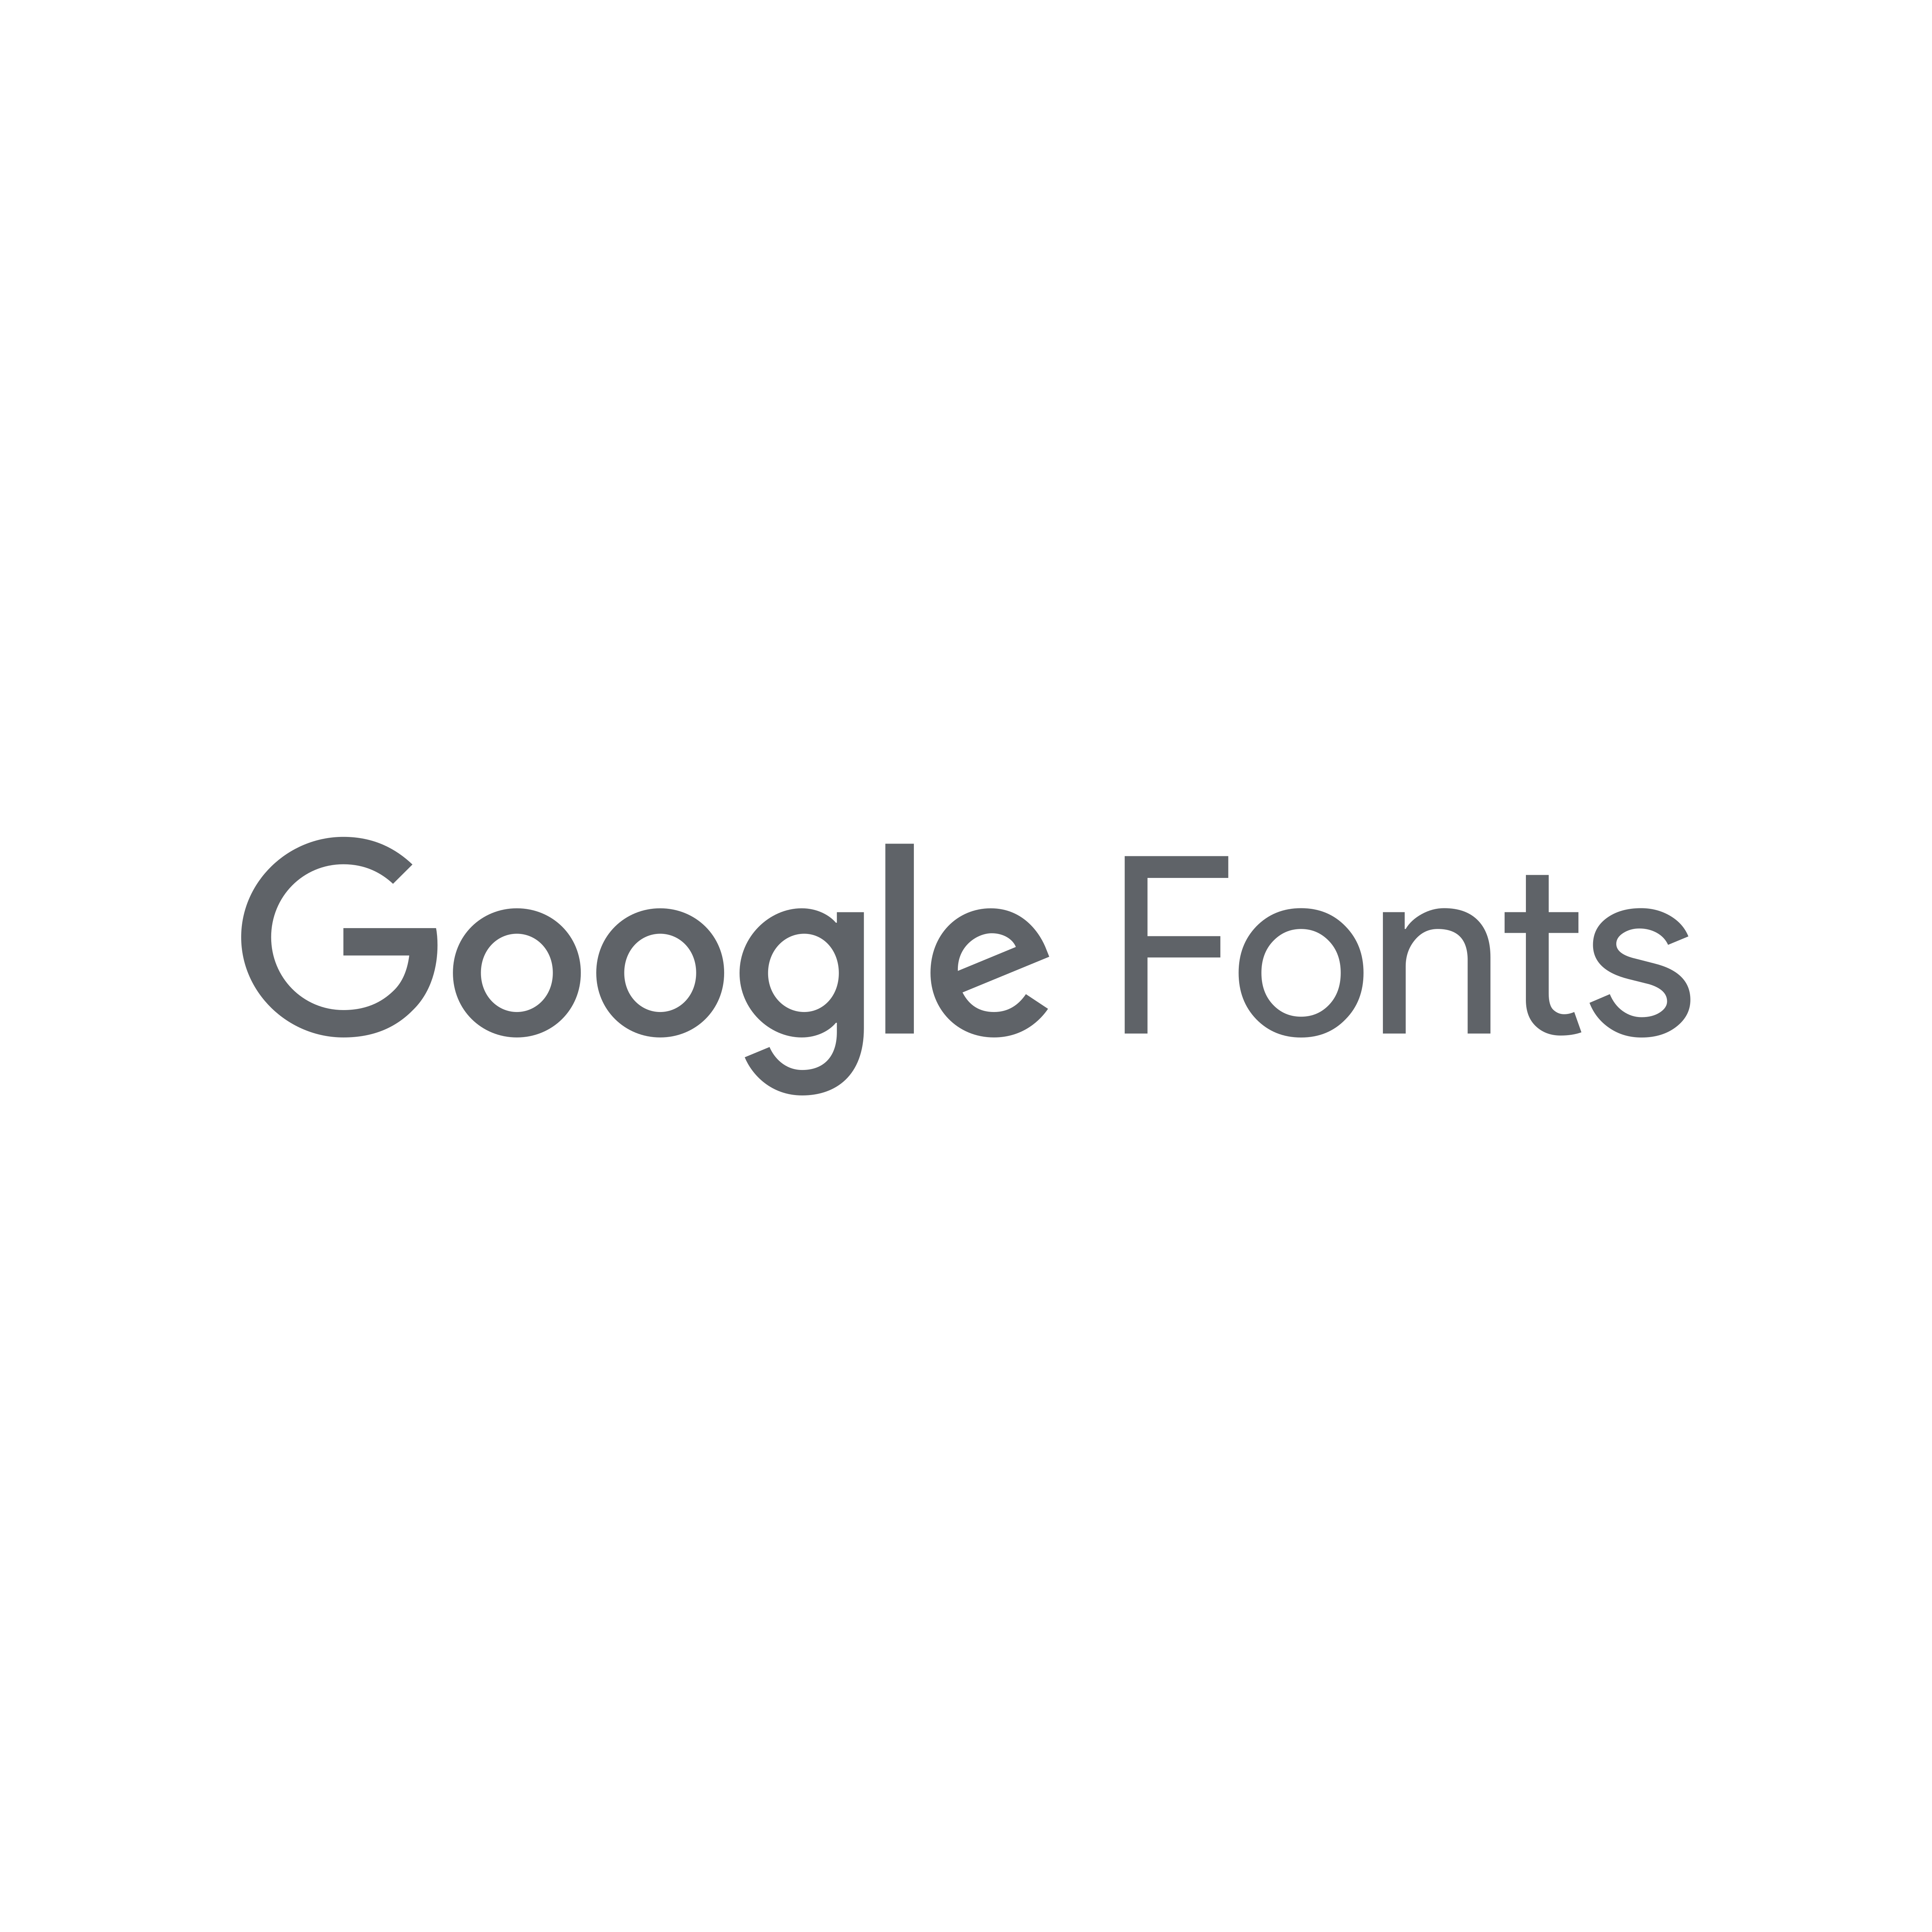 Google Fonts Logo Transparent Picture